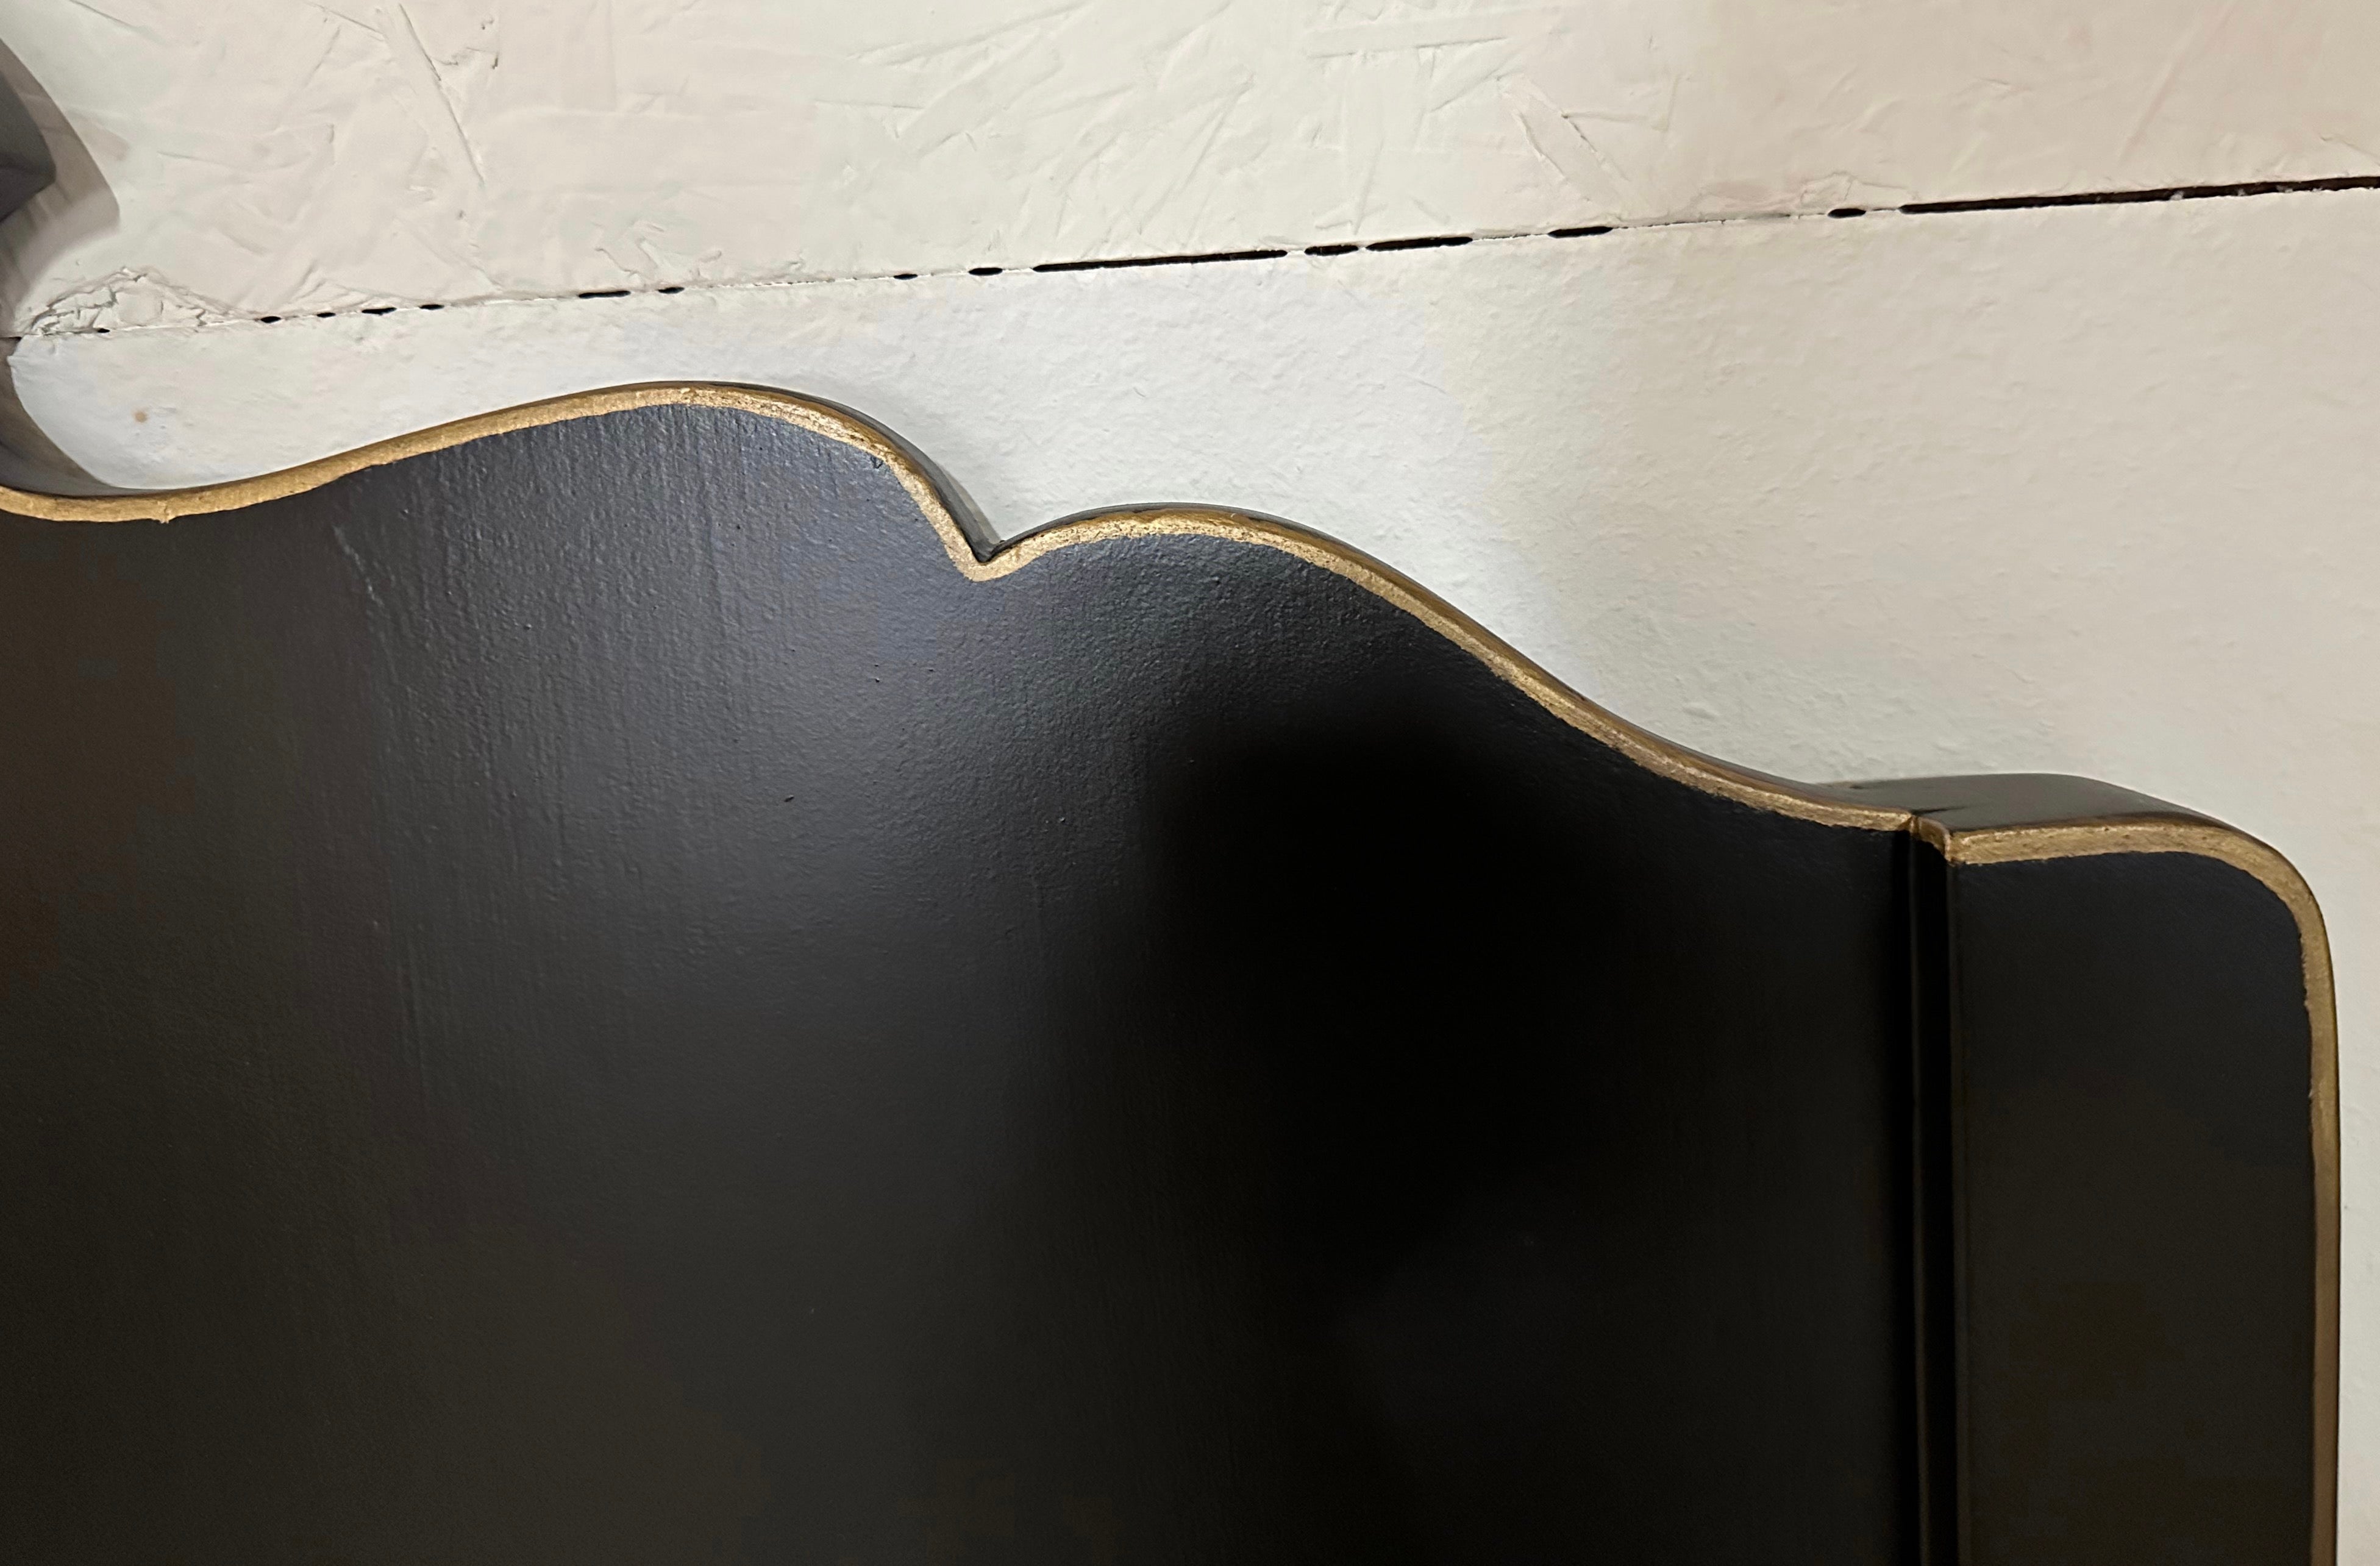 Das Paar der Twin-Size-Vintage venezianischen Stil Kopfteile sind eine schwarze matte Oberfläche gemalt, mit Gold trim auf Holz umrandet wird eine elegante Oberfläche zu jedem Schlafzimmer geben.
Suchbegriffe: Mid-Century Modern, Hollywood Regency,